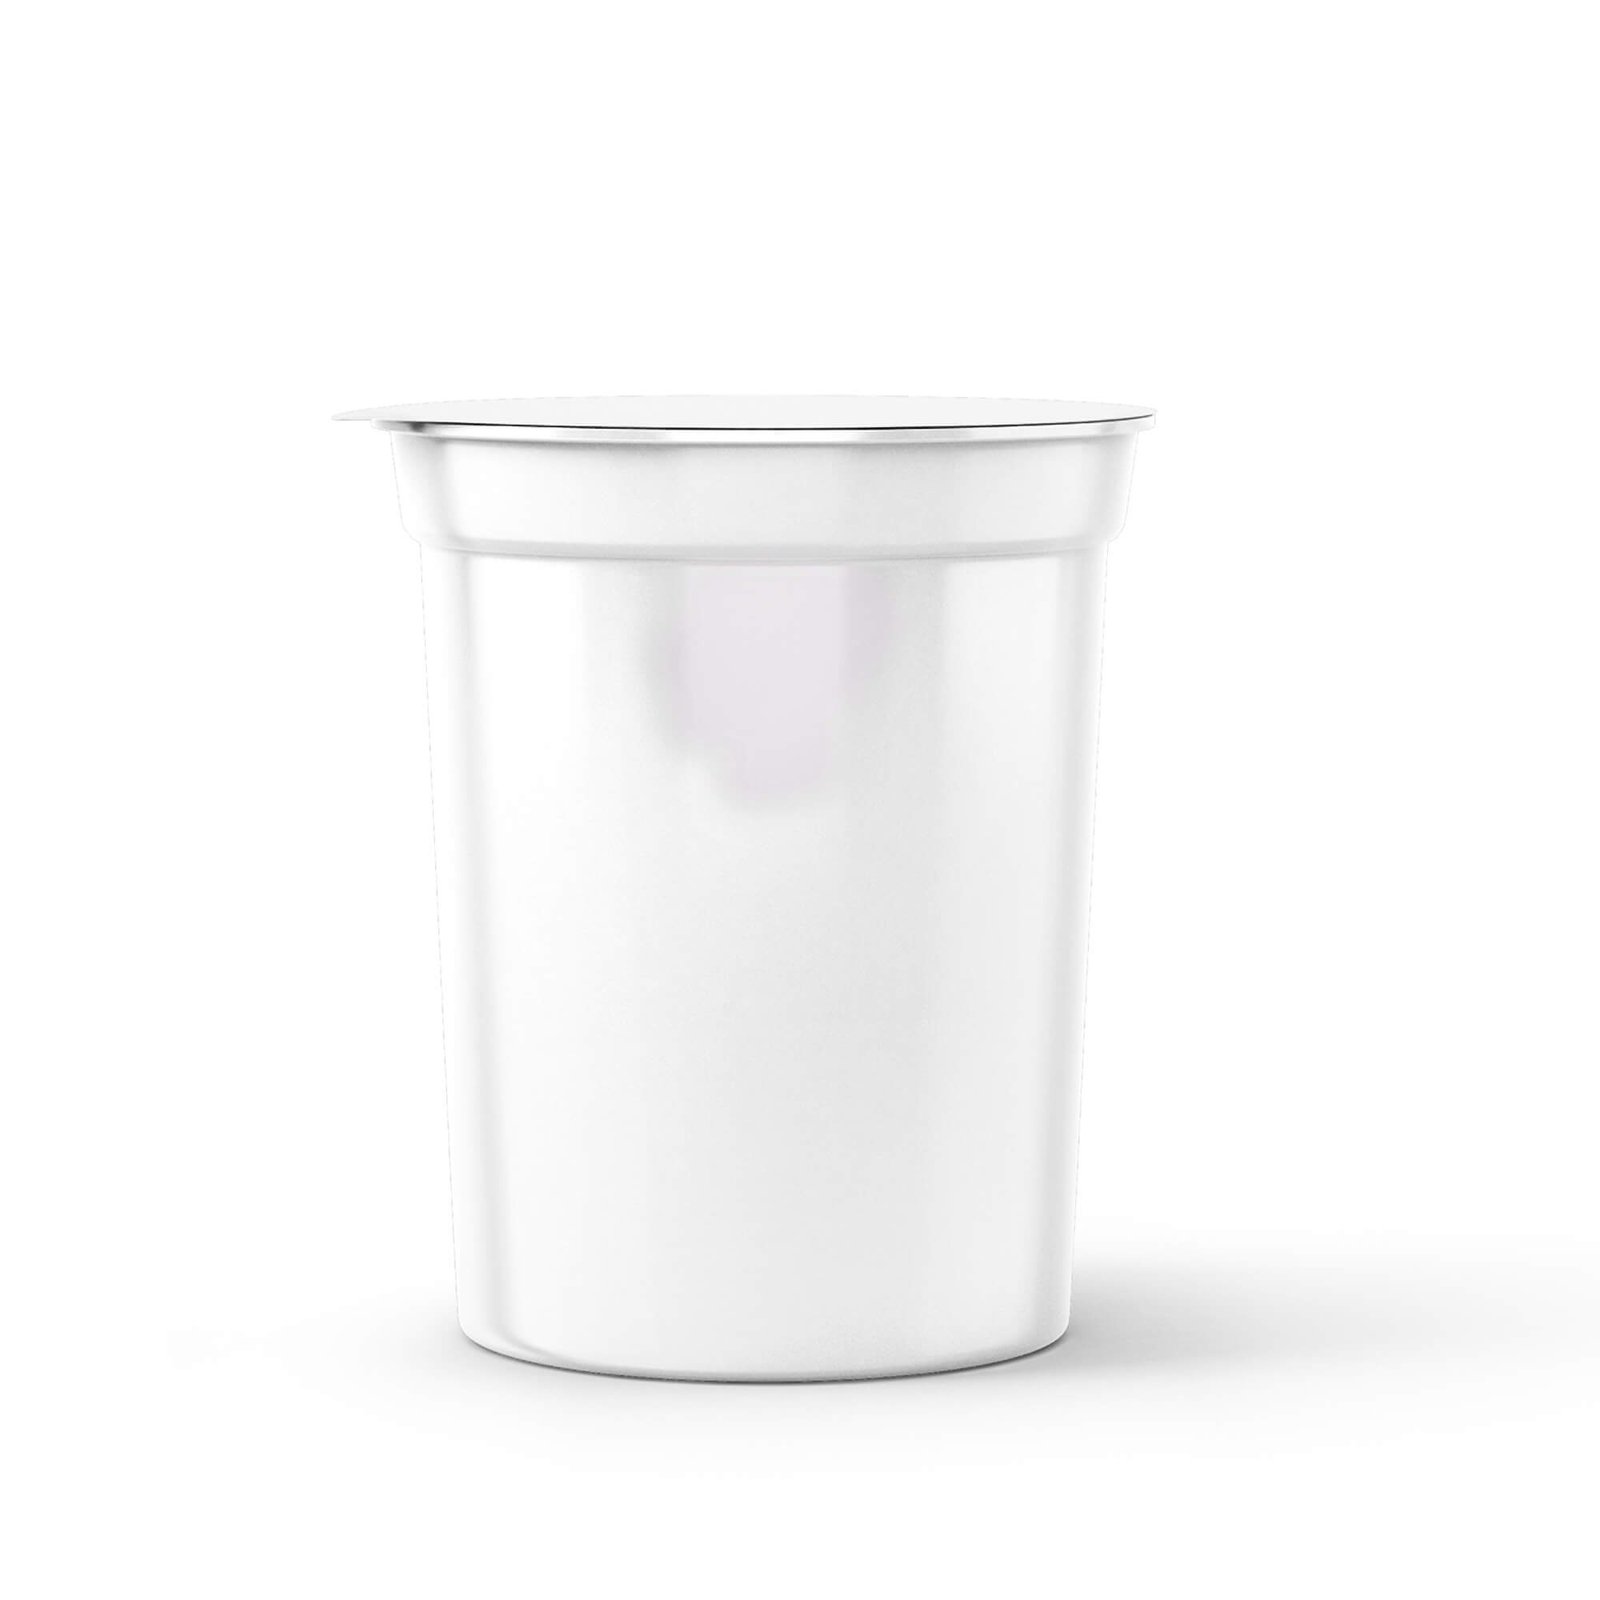 Blank Free Yogurt Packaging Mockup PSD Template